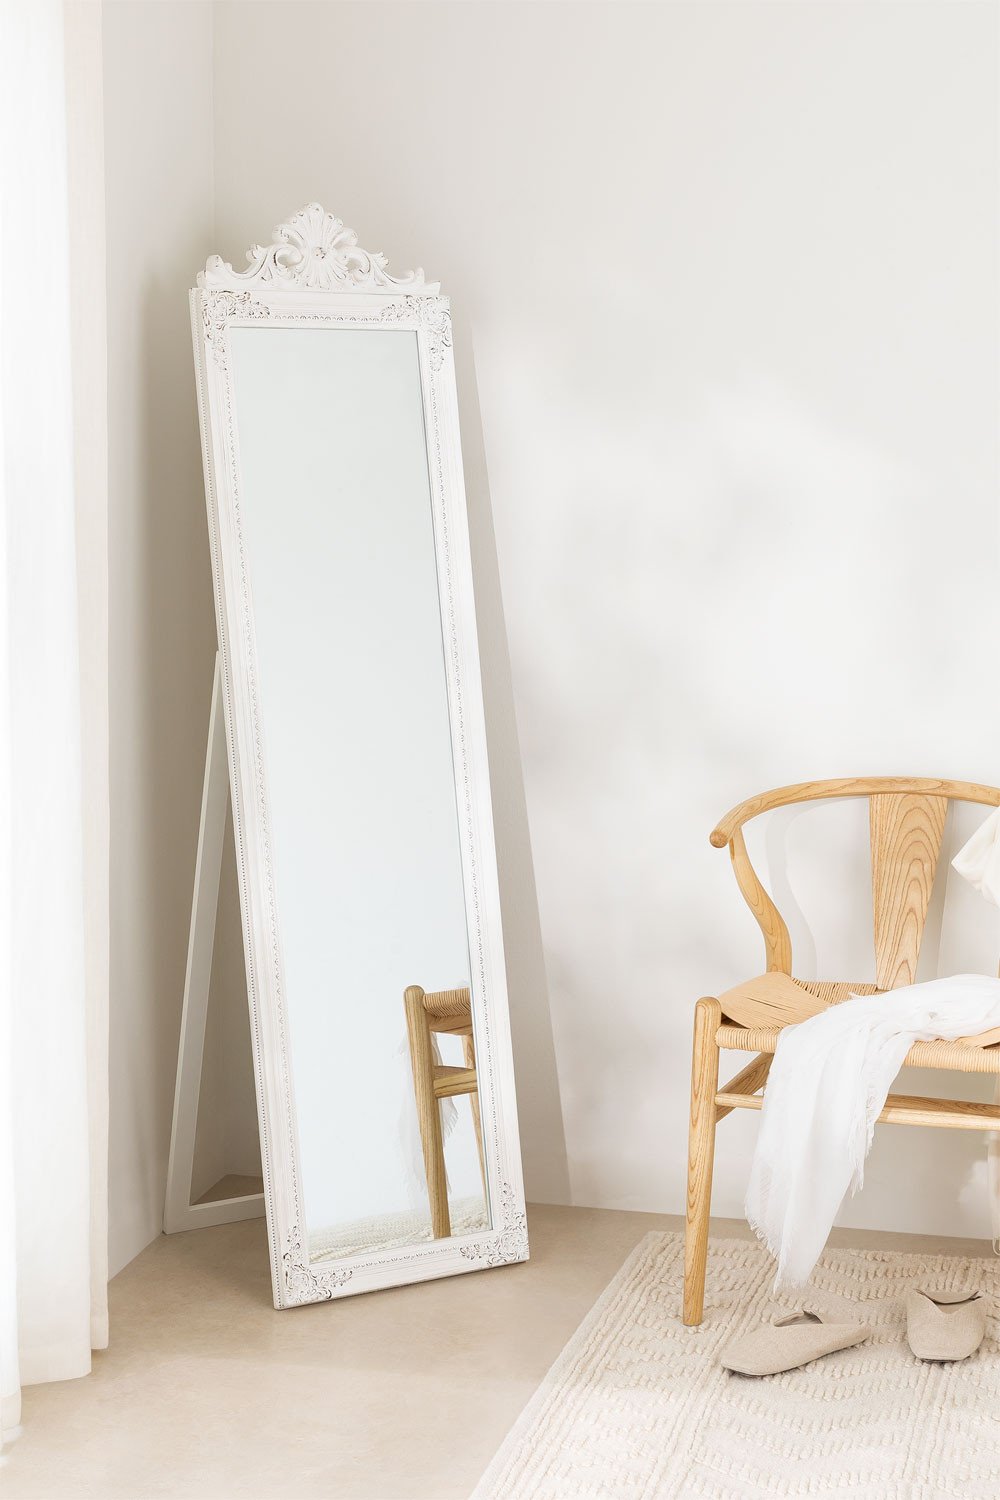 Houten staande spiegel (45x170 cm) Ariel, galerij beeld 1